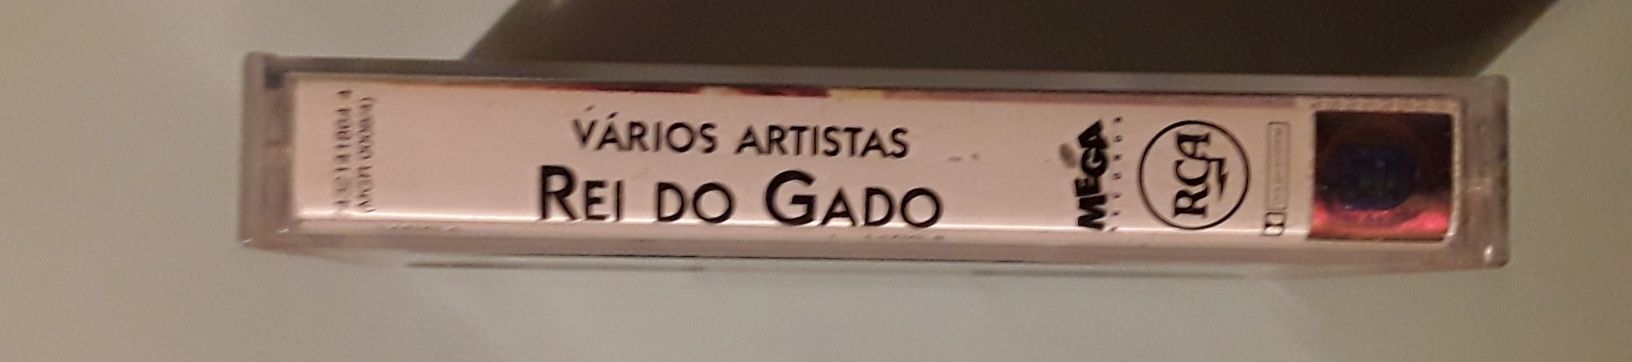 Cassete música brasileira "Rei do Gado" - vários artistas